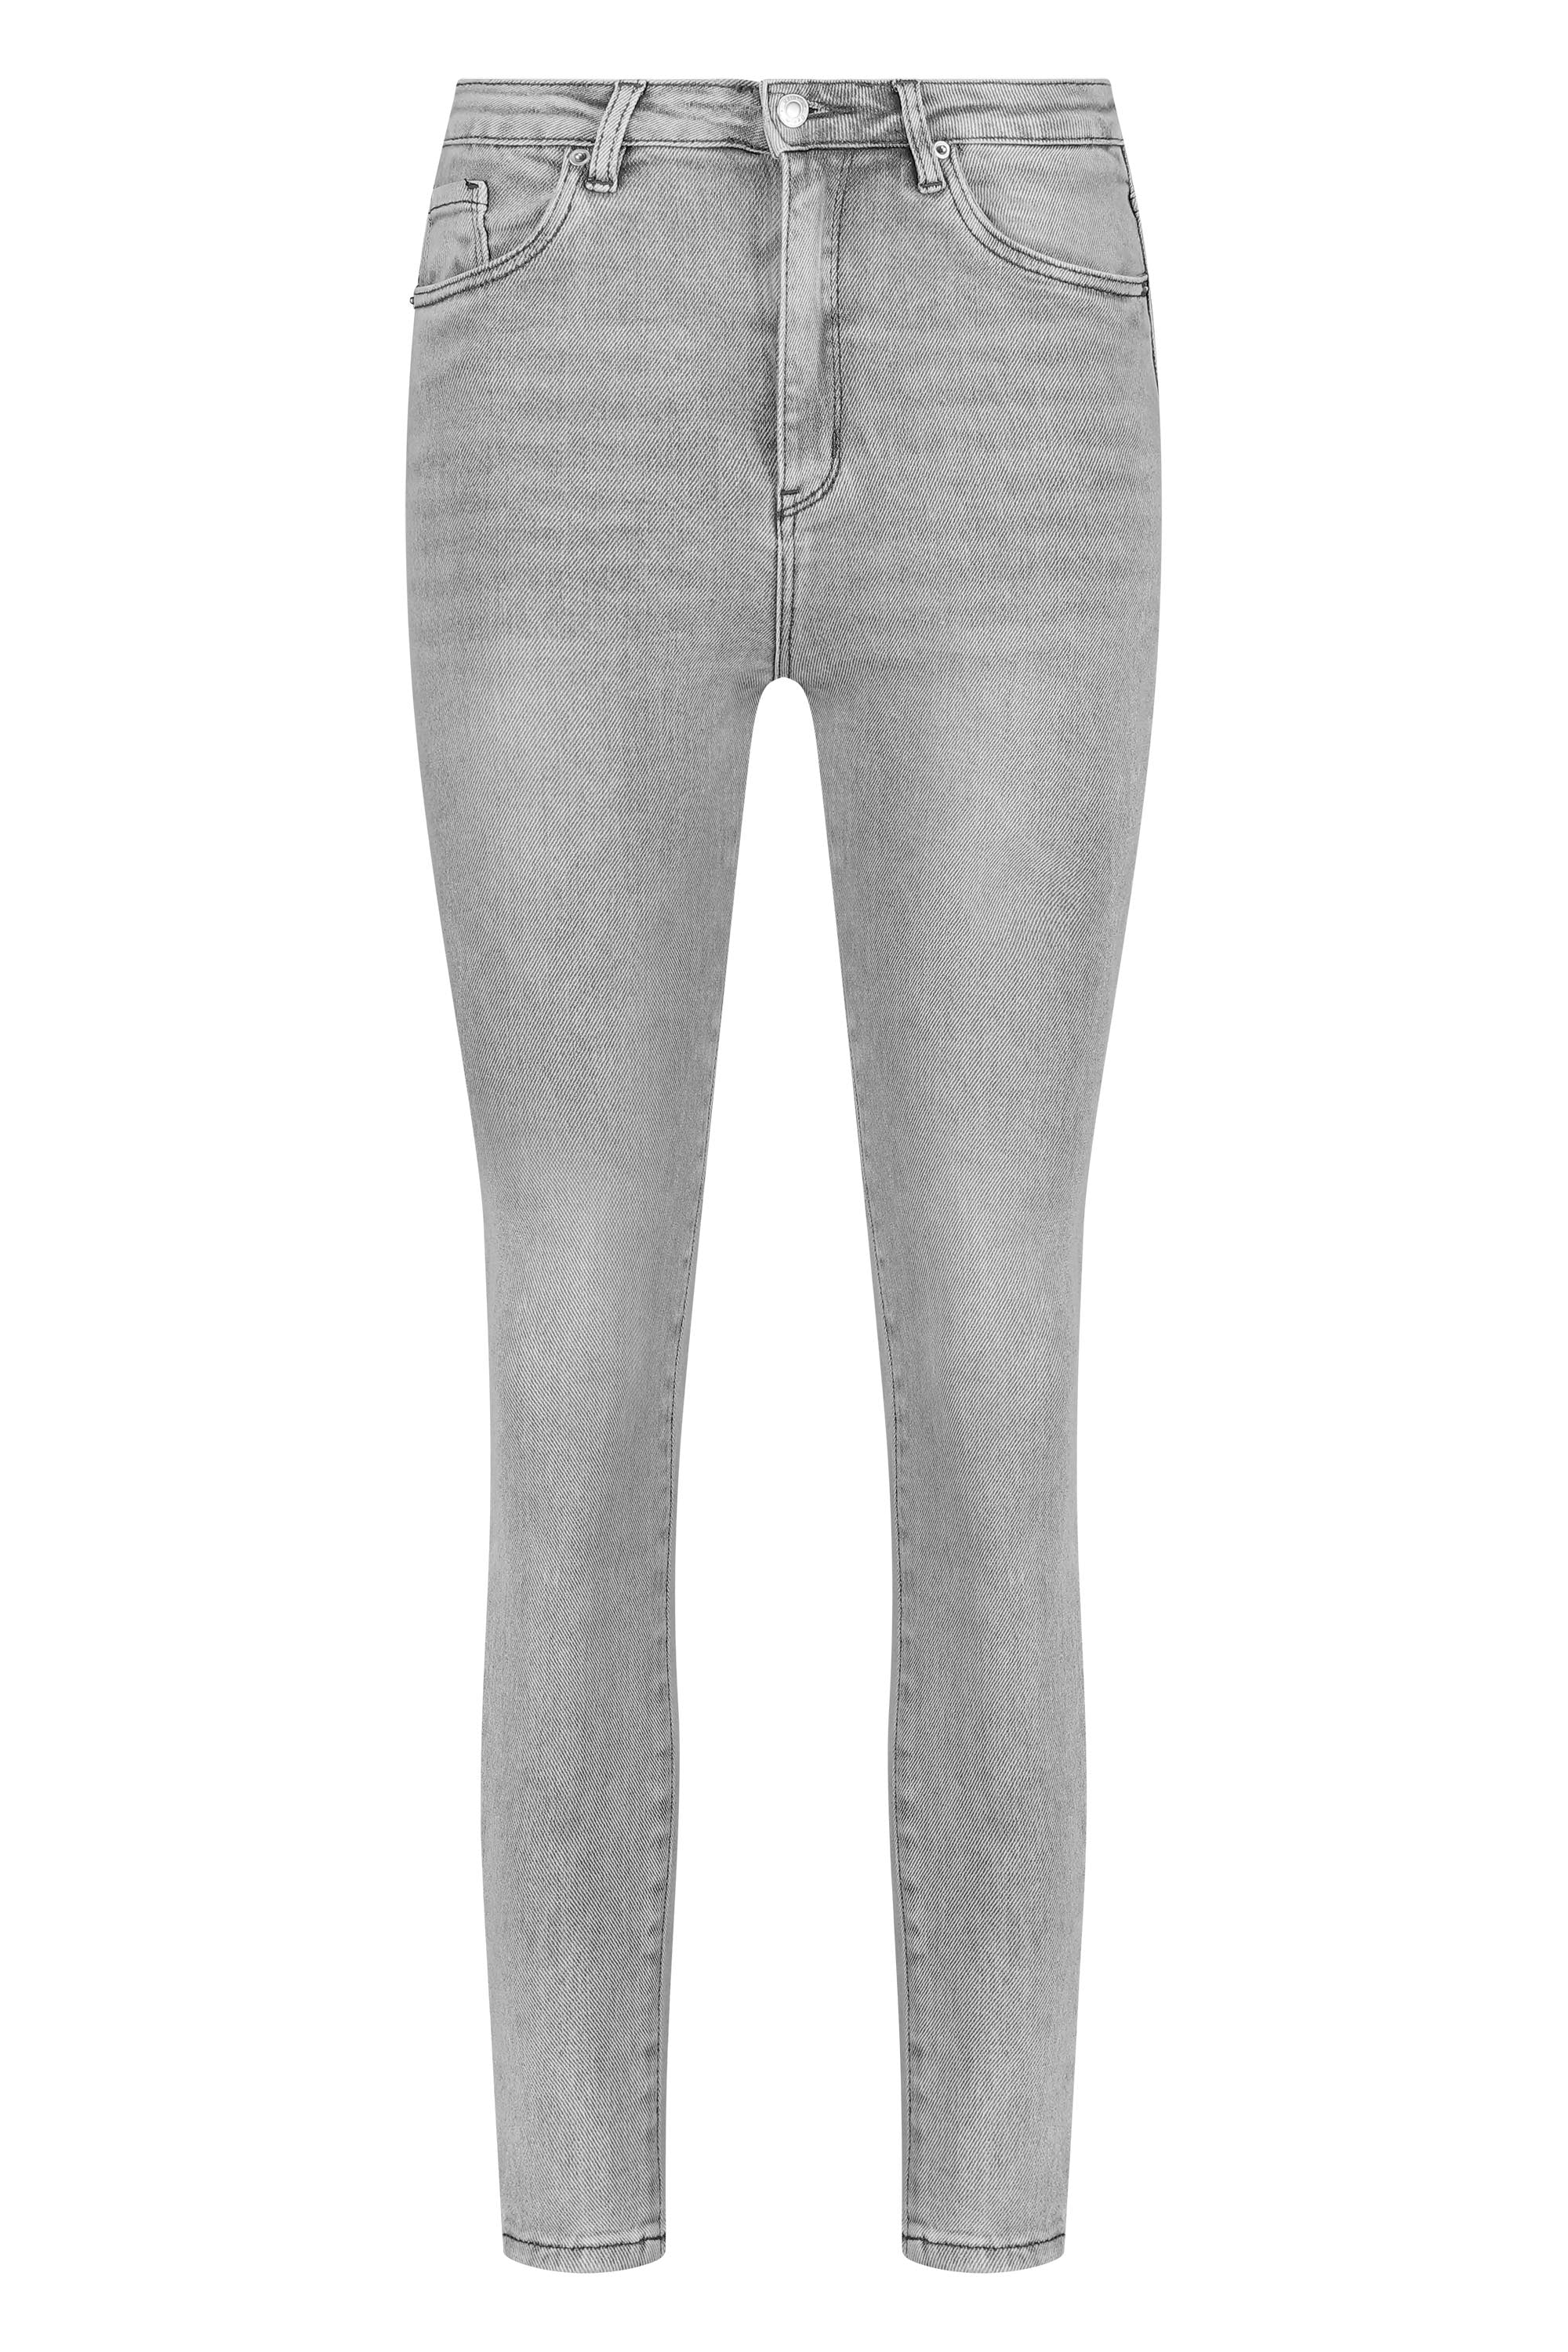 Skinny jeans stretch light grey